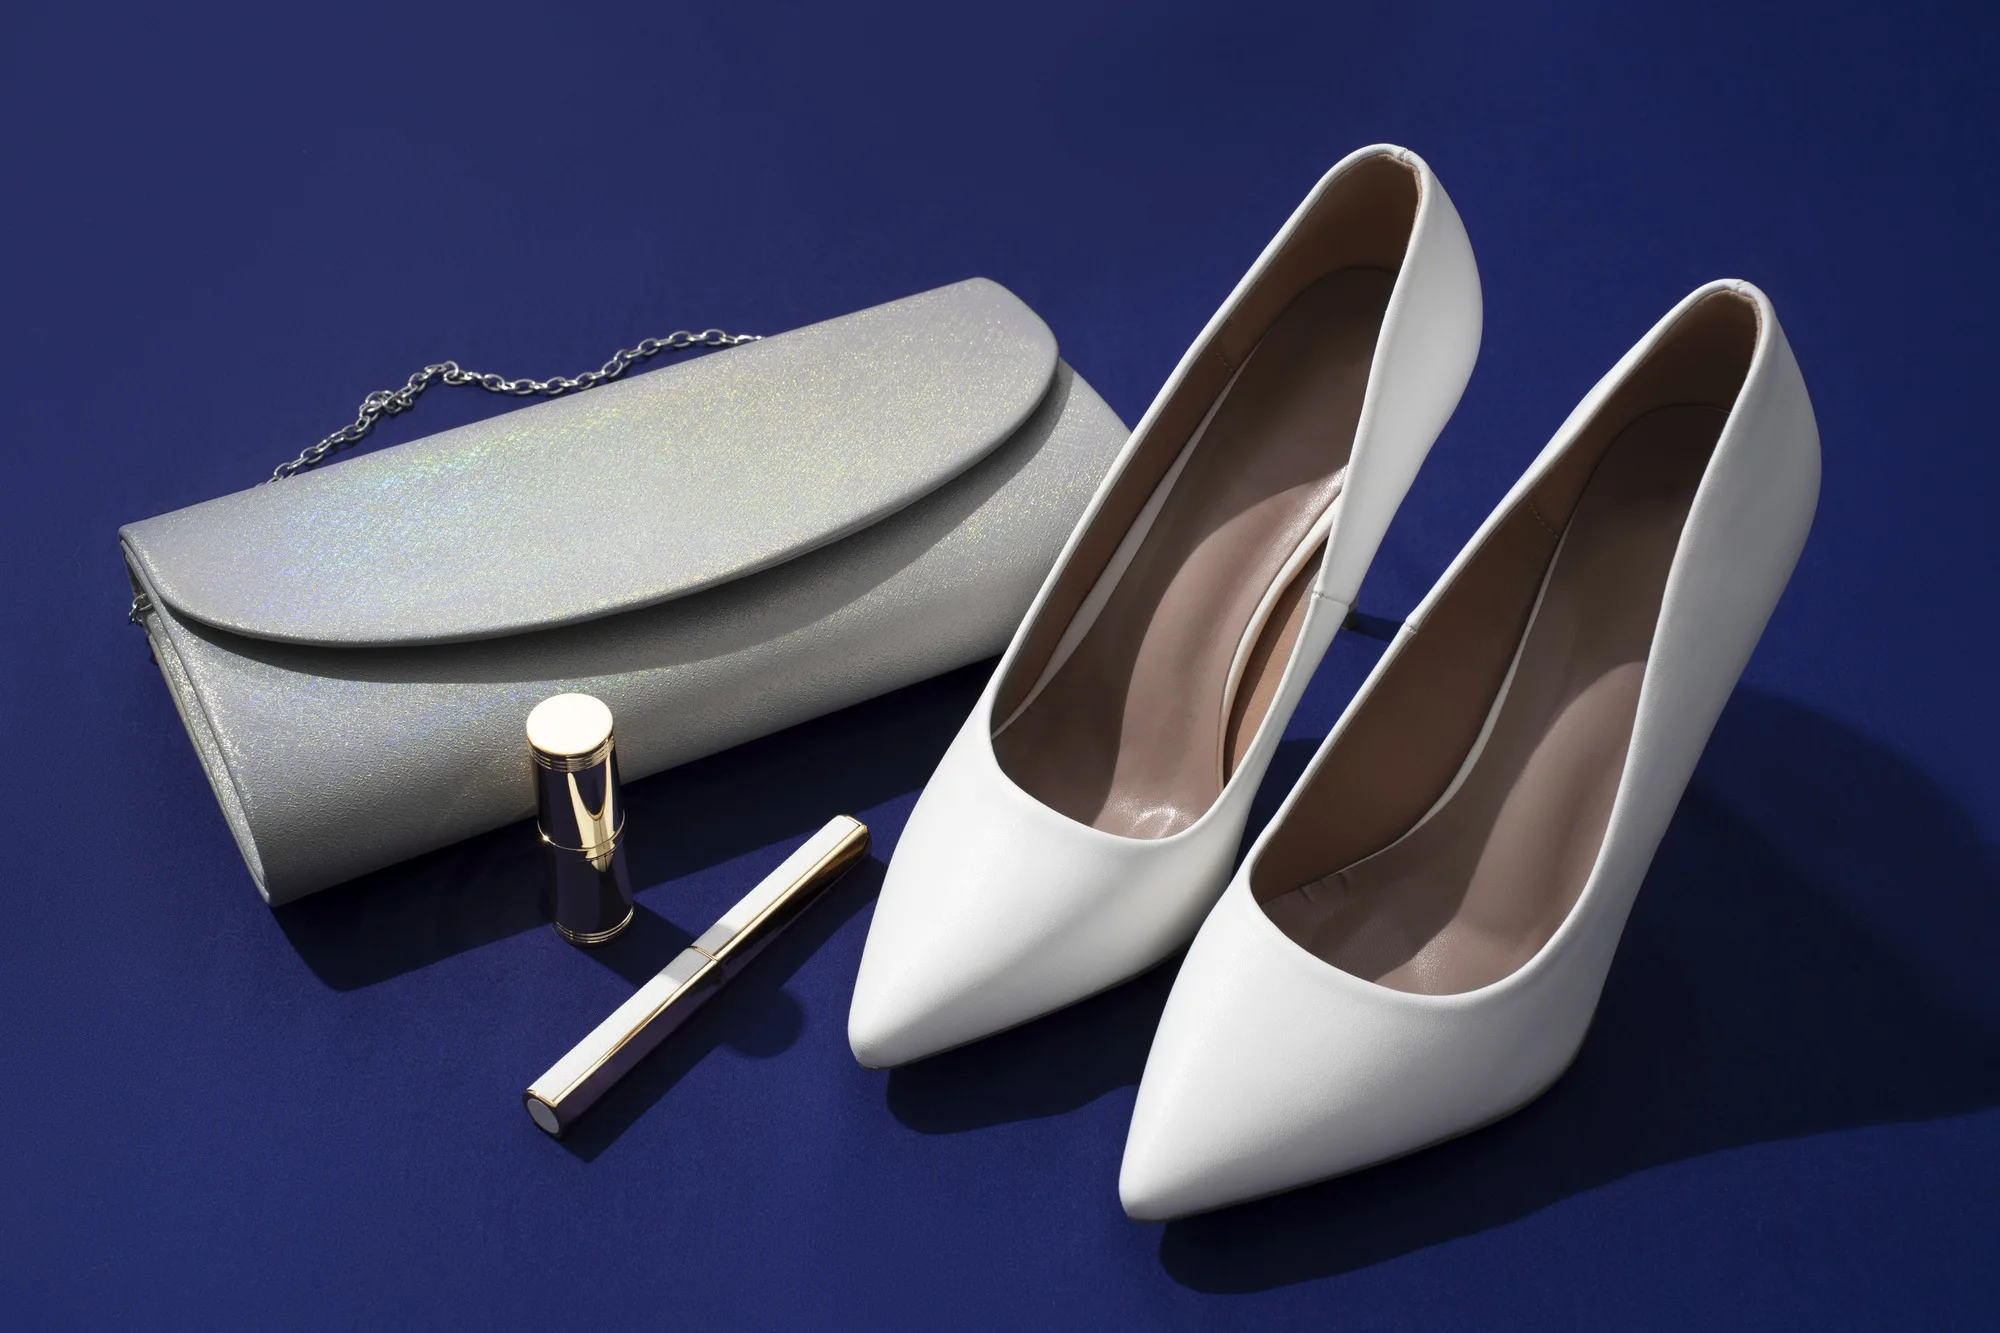 یک عدد کفش مجلسی برای مزون لباس زنانه کنار کیف مجلسی زنانه که روی یک صفحه بنفش قرار گرفته است.